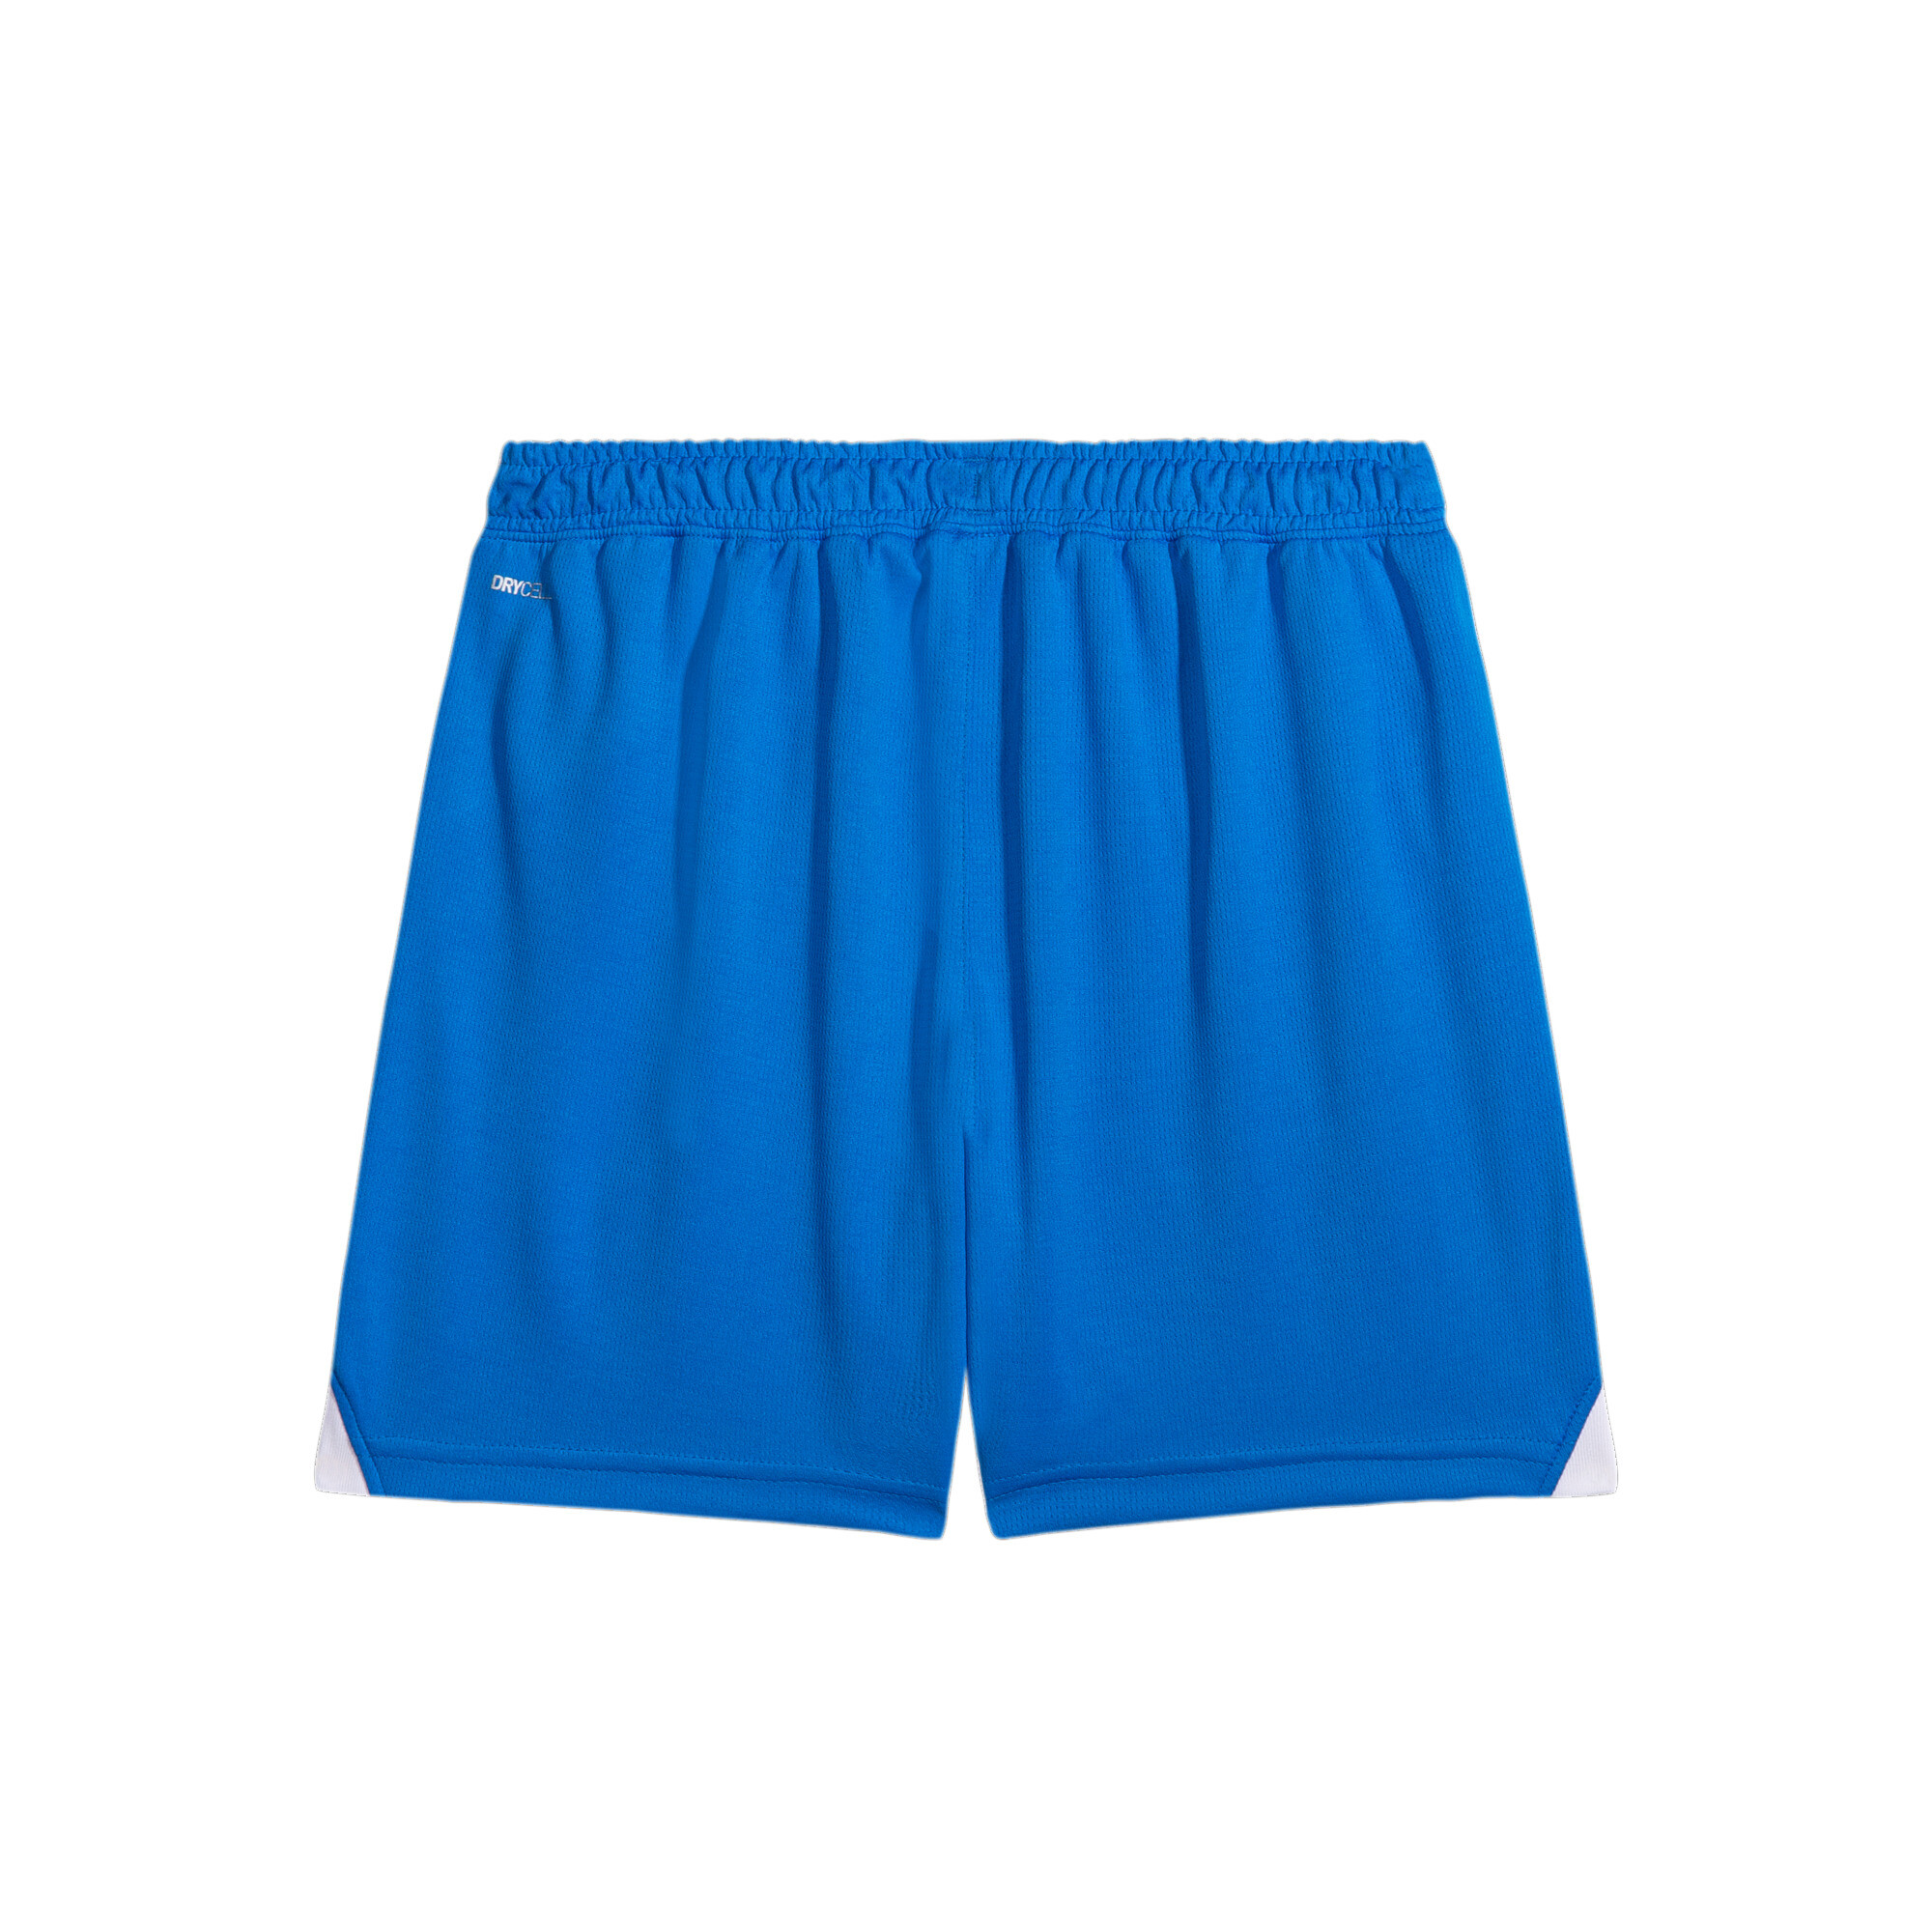 PUMA Al Hilal 23/24 Replica Shorts In Blue, Size 15-16 Youth